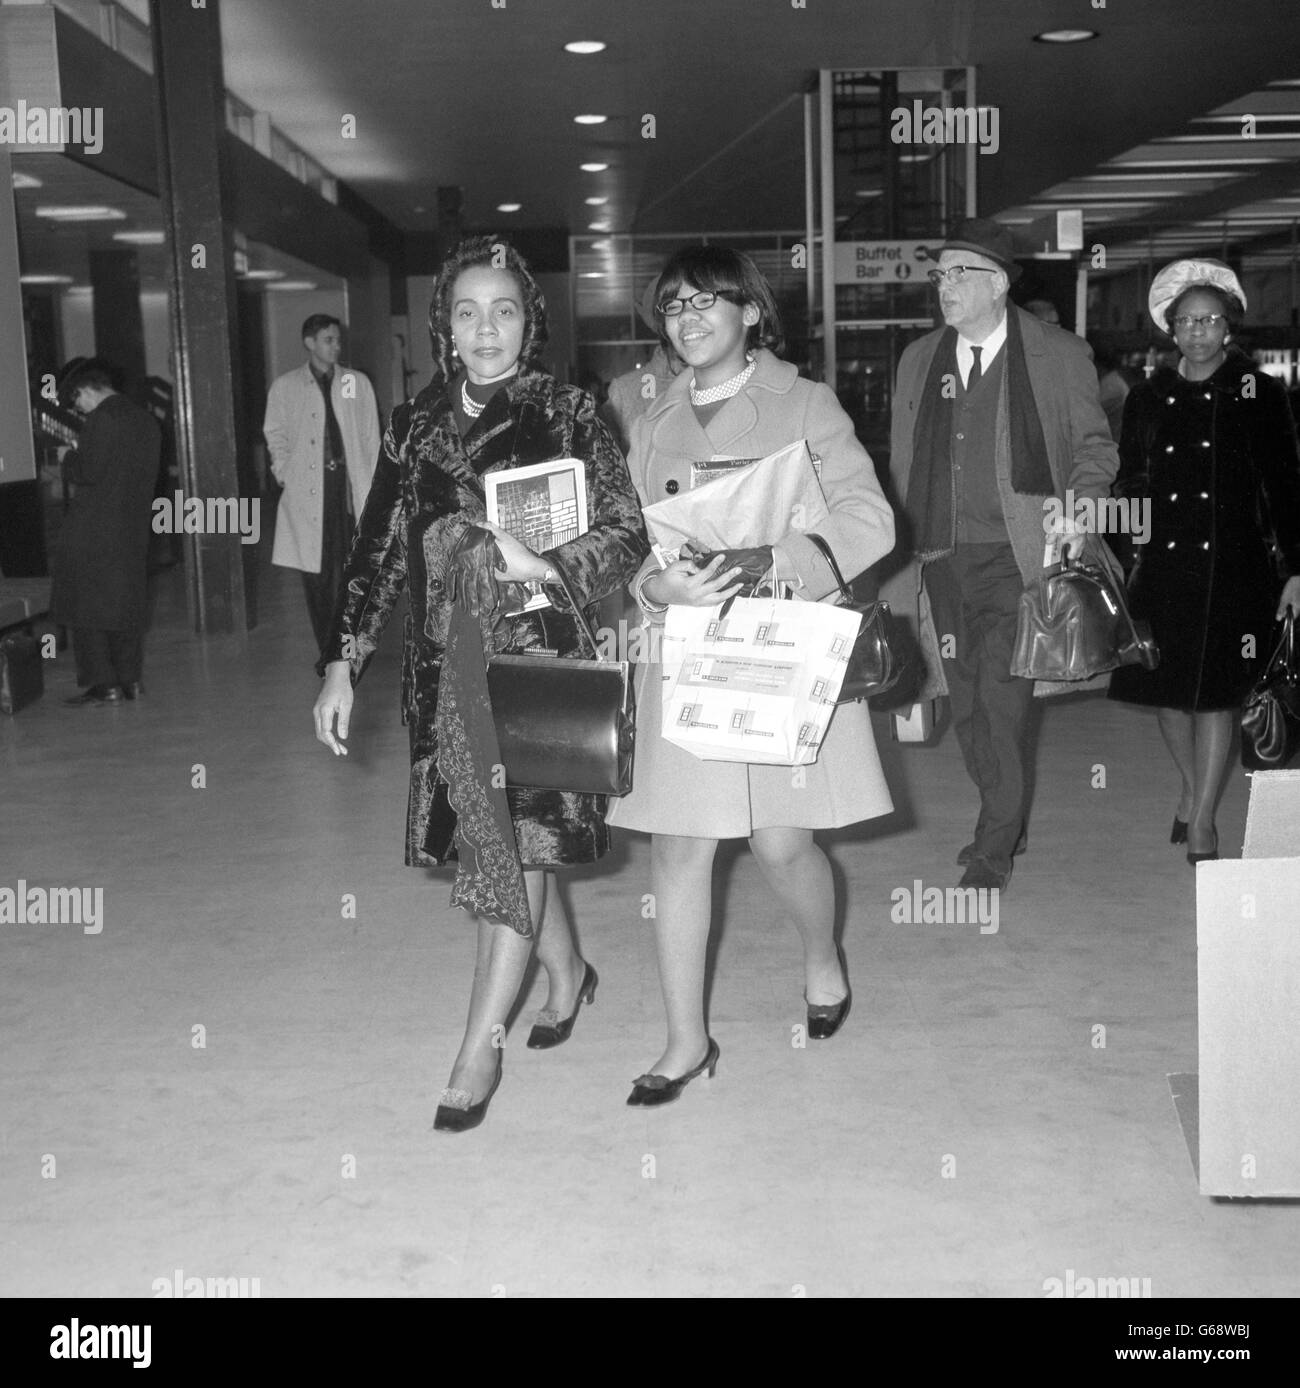 Coretta King, Witwe des ermordeten Bürgerrechtführers Martin Luther King, mit ihrer Tochter Yolanda, 13 Jahre alt. Nach einem viertägigen Besuch in London waren sie am Flughafen Heathrow. Stockfoto